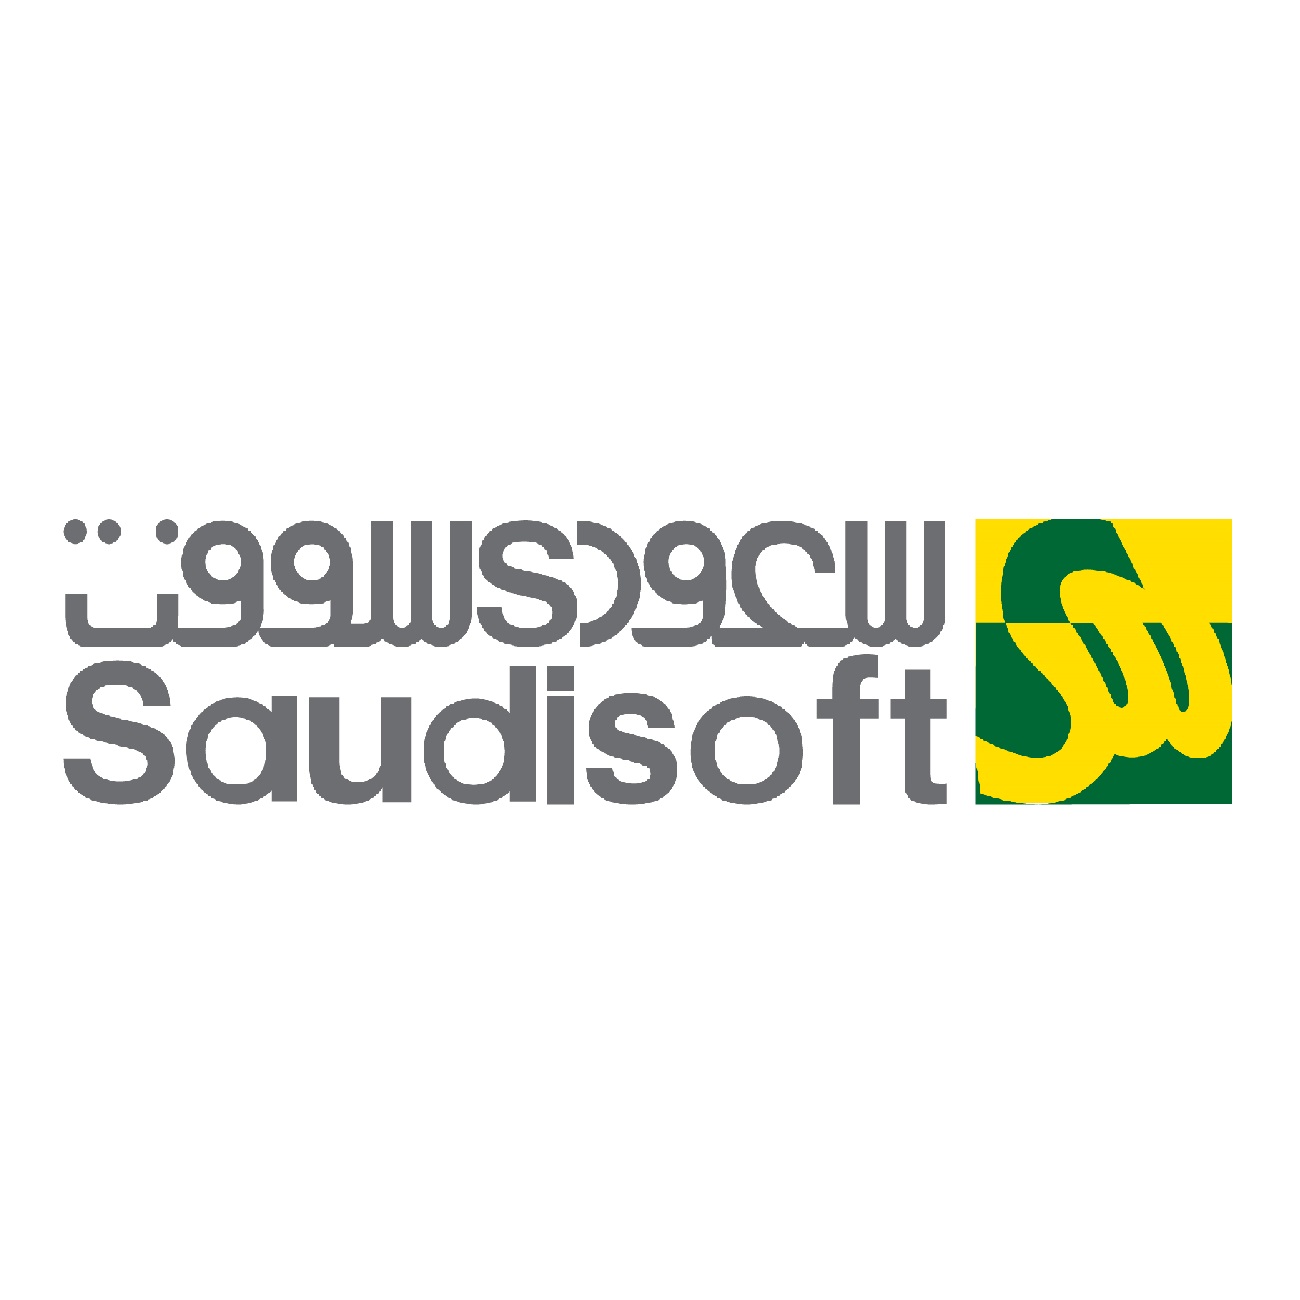 Saudisoft